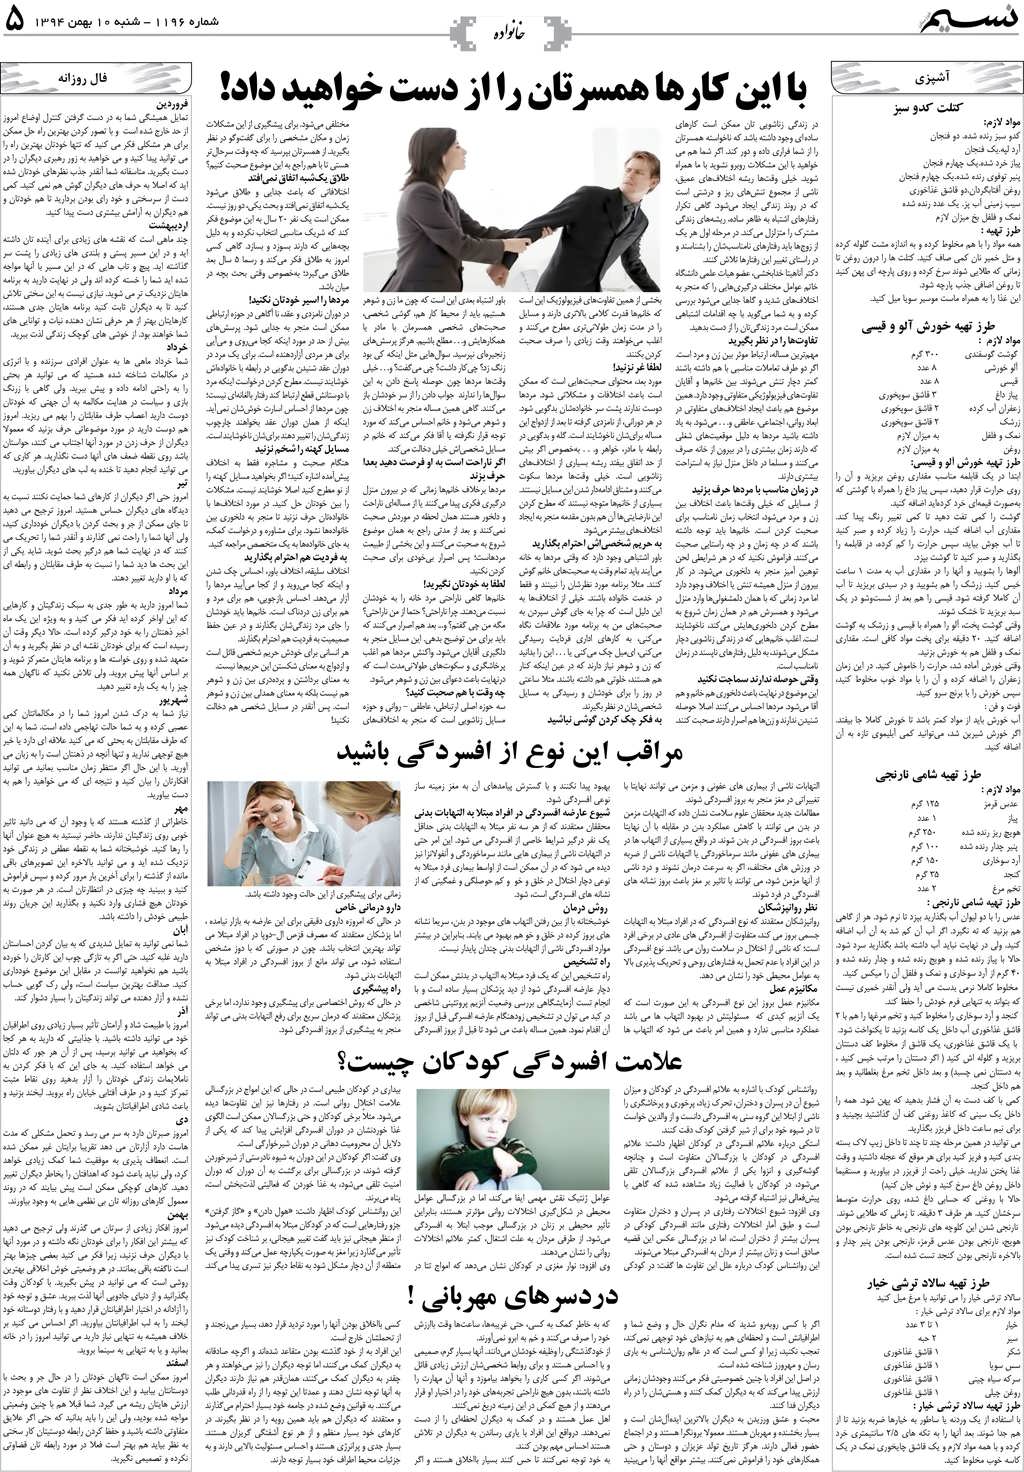 صفحه خانواده روزنامه نسیم شماره 1196